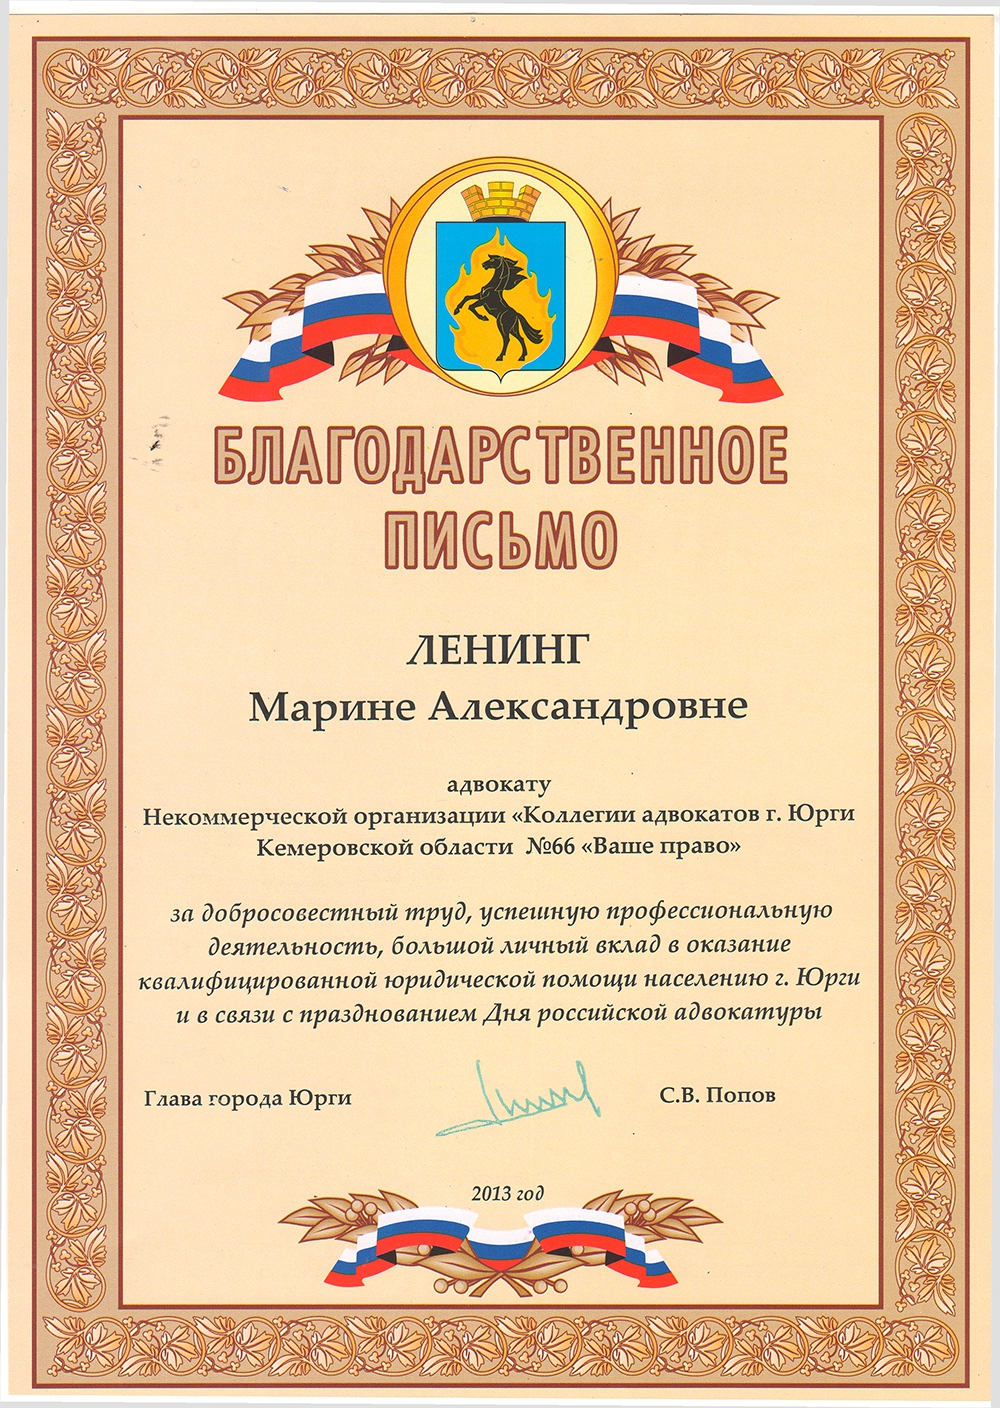 Коллегия адвокатов «Ваше право» Благодарственное письмо Ленинг Марине .